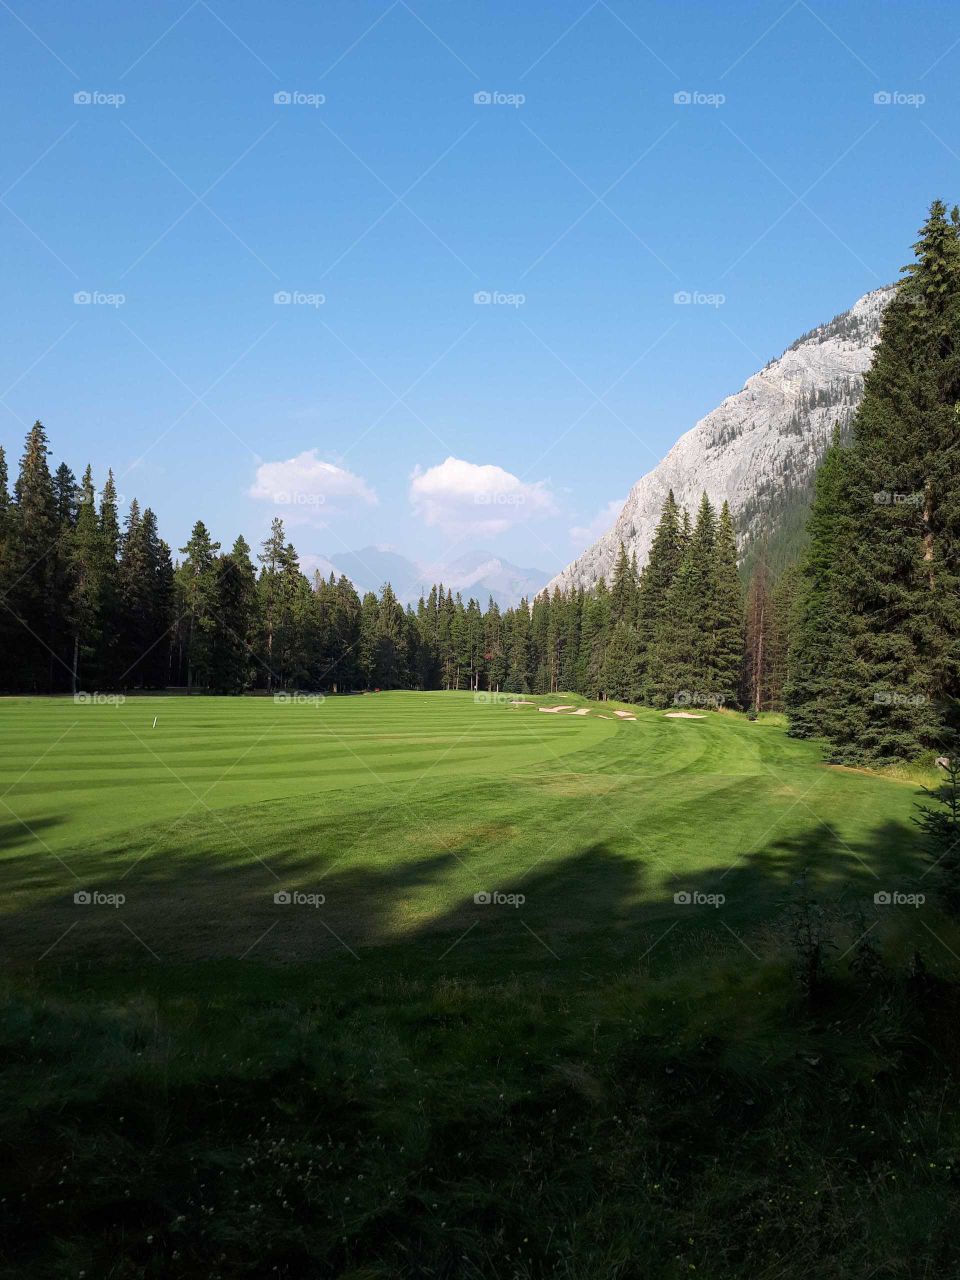 Mountain golf